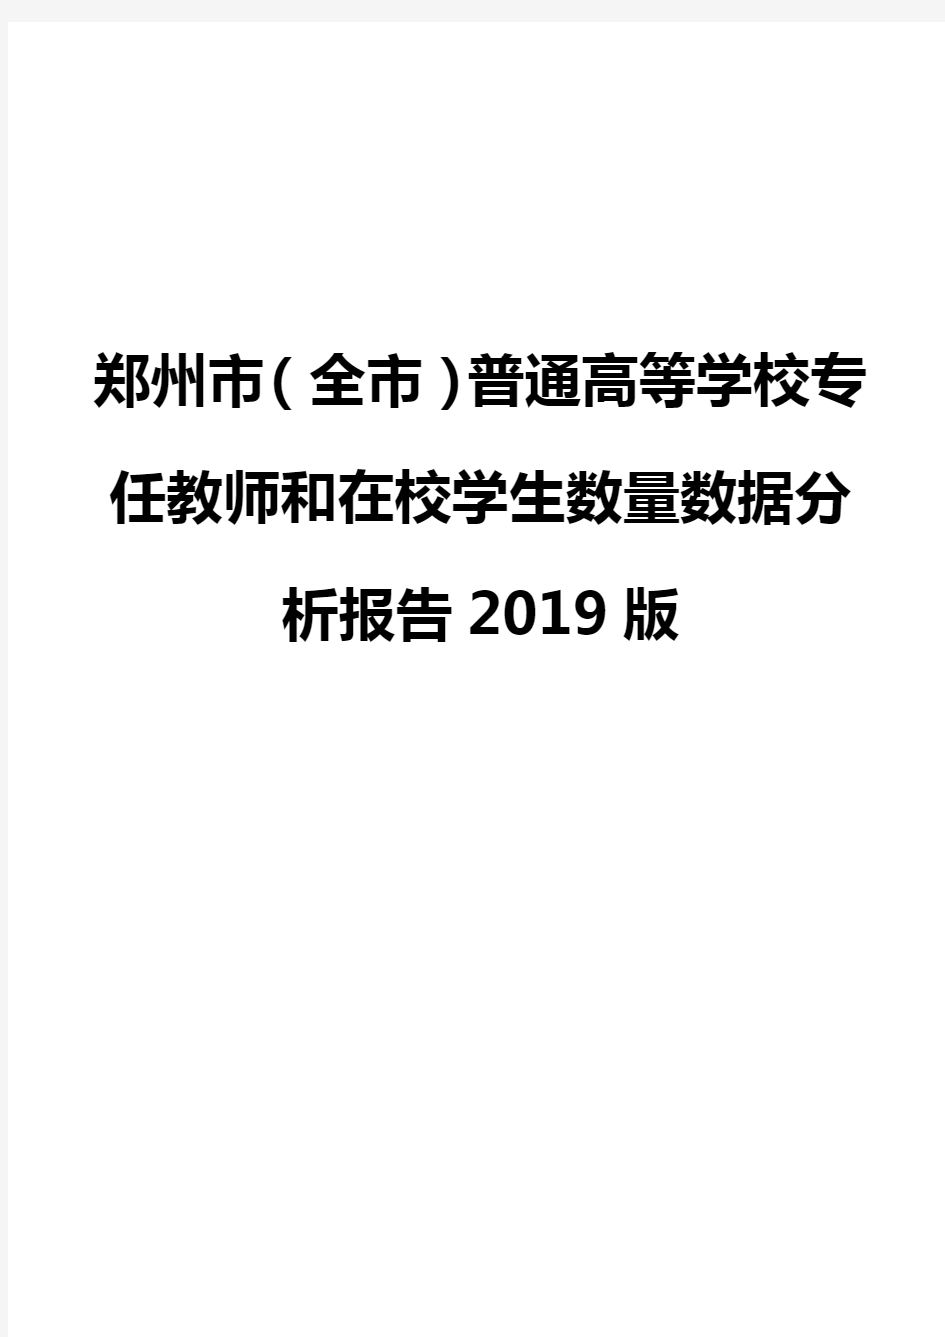 郑州市(全市)普通高等学校专任教师和在校学生数量数据分析报告2019版